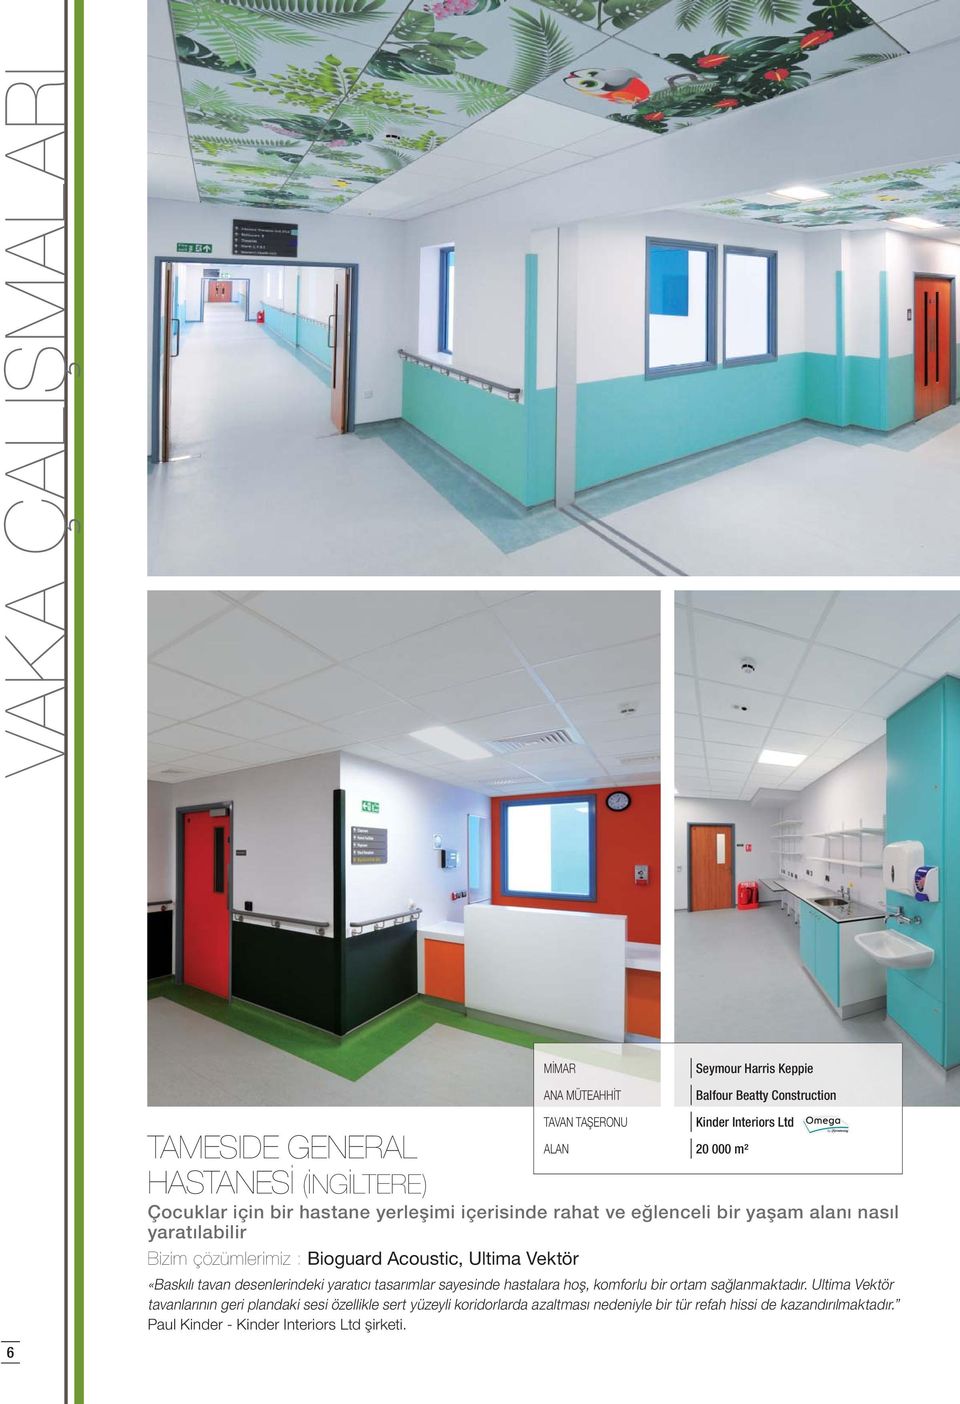 Interiors Ltd ALAN 20 000 m² «Baskılı tavan desenlerindeki yaratıcı tasarımlar sayesinde hastalara hoş, komforlu bir ortam sağlanmaktadır.